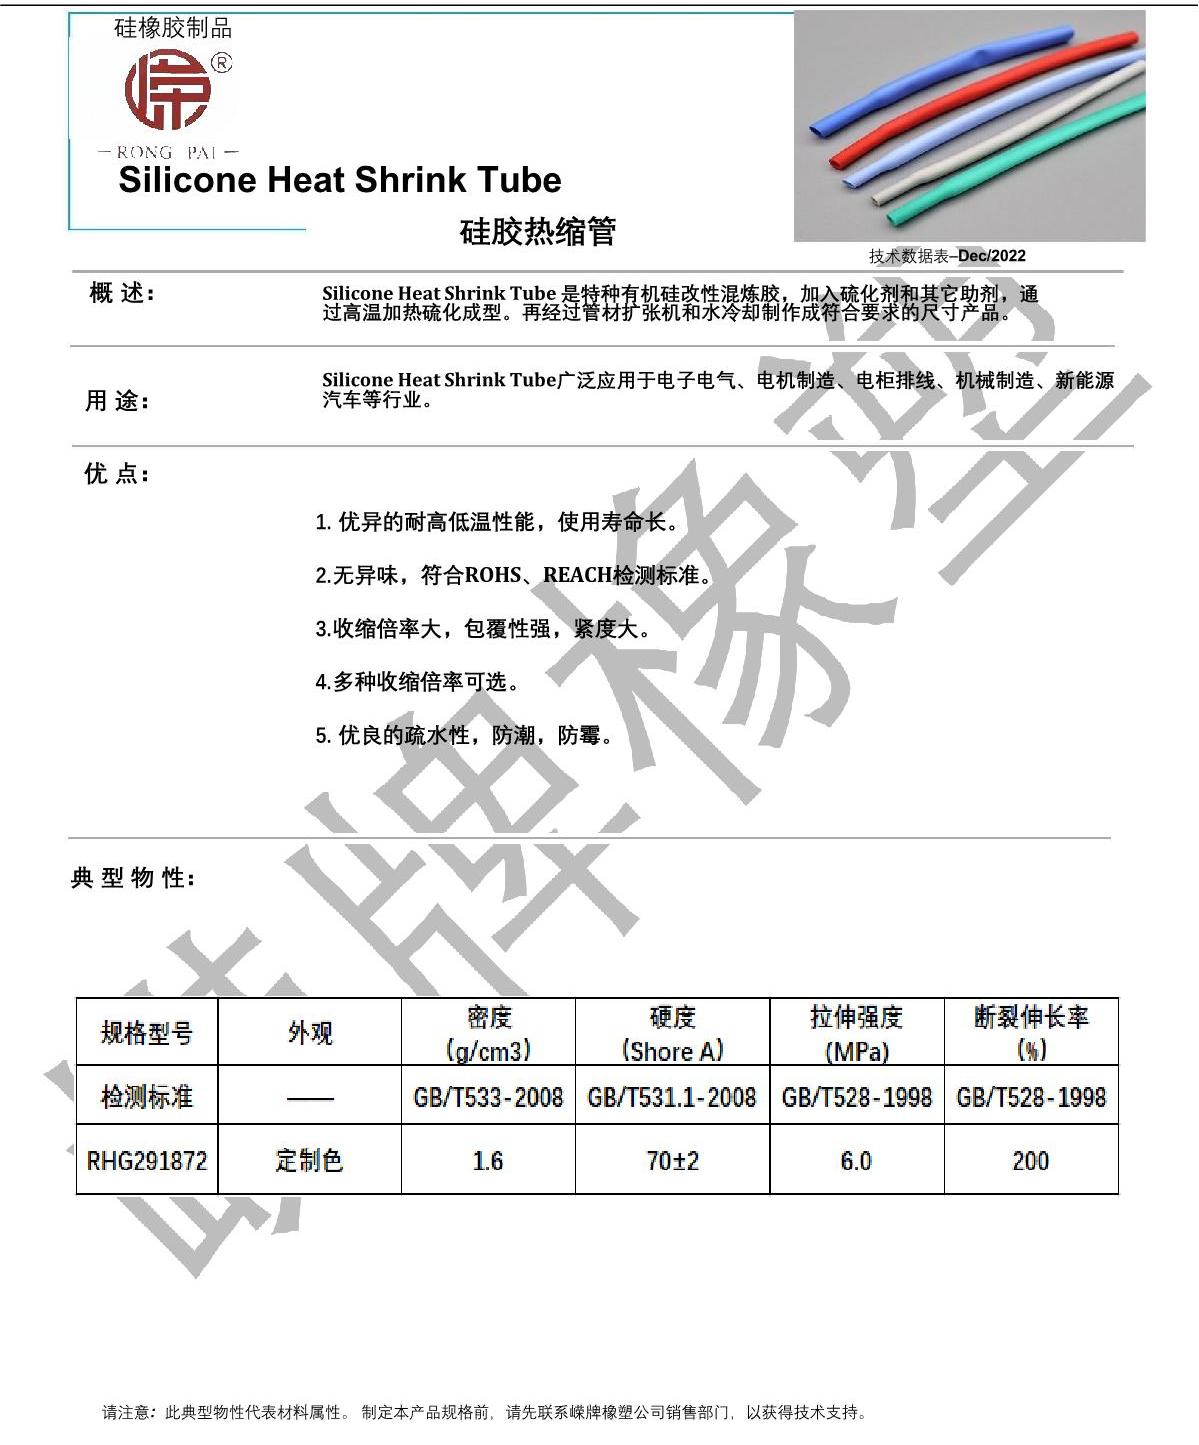 硅胶热缩管产品说明_1.JPG